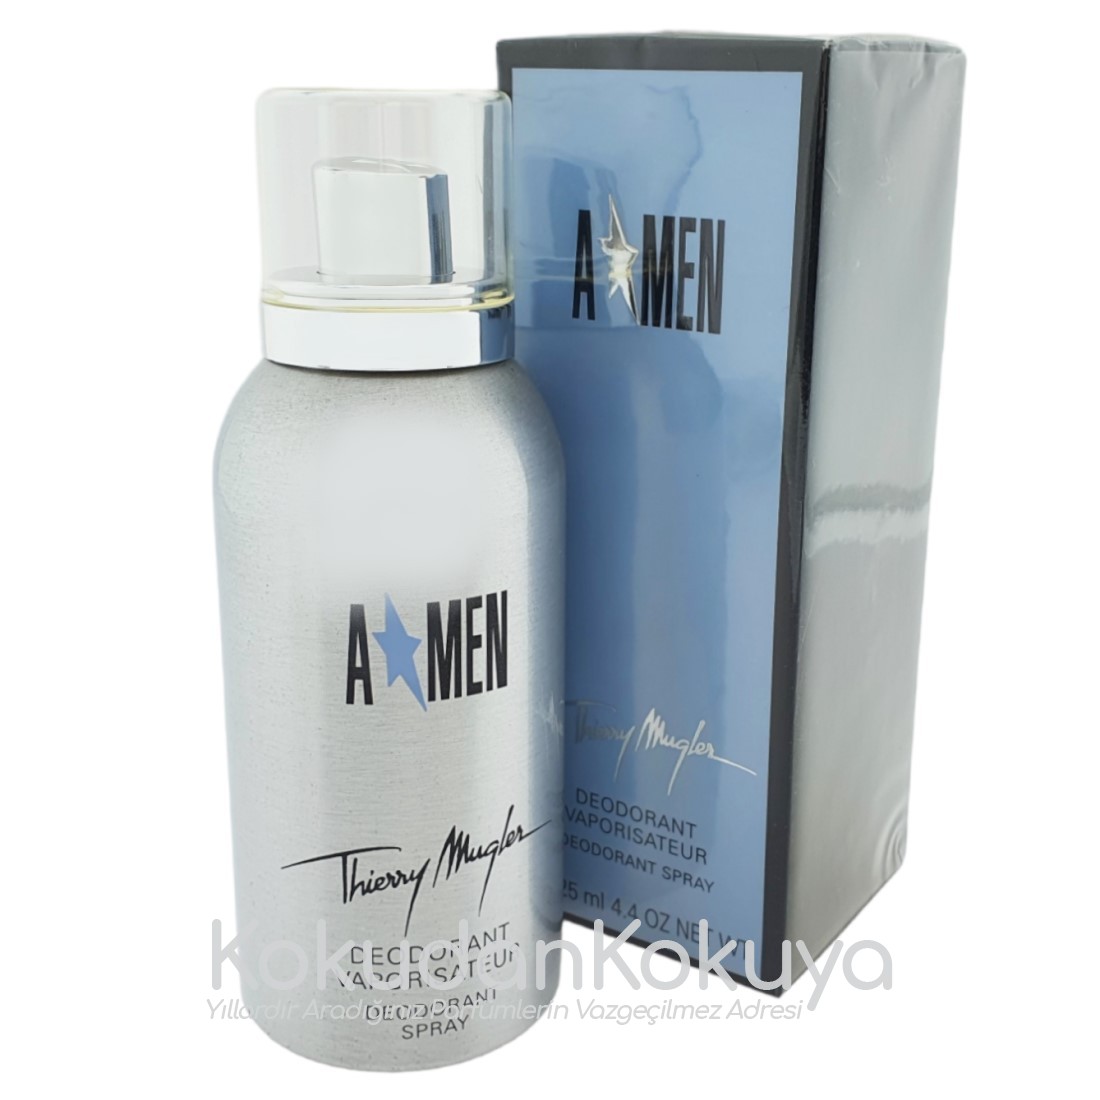 THIERRY MUGLER A*Men (Angel Men) (Vintage) Deodorant Erkek 125ml Deodorant Spray (Metal) 